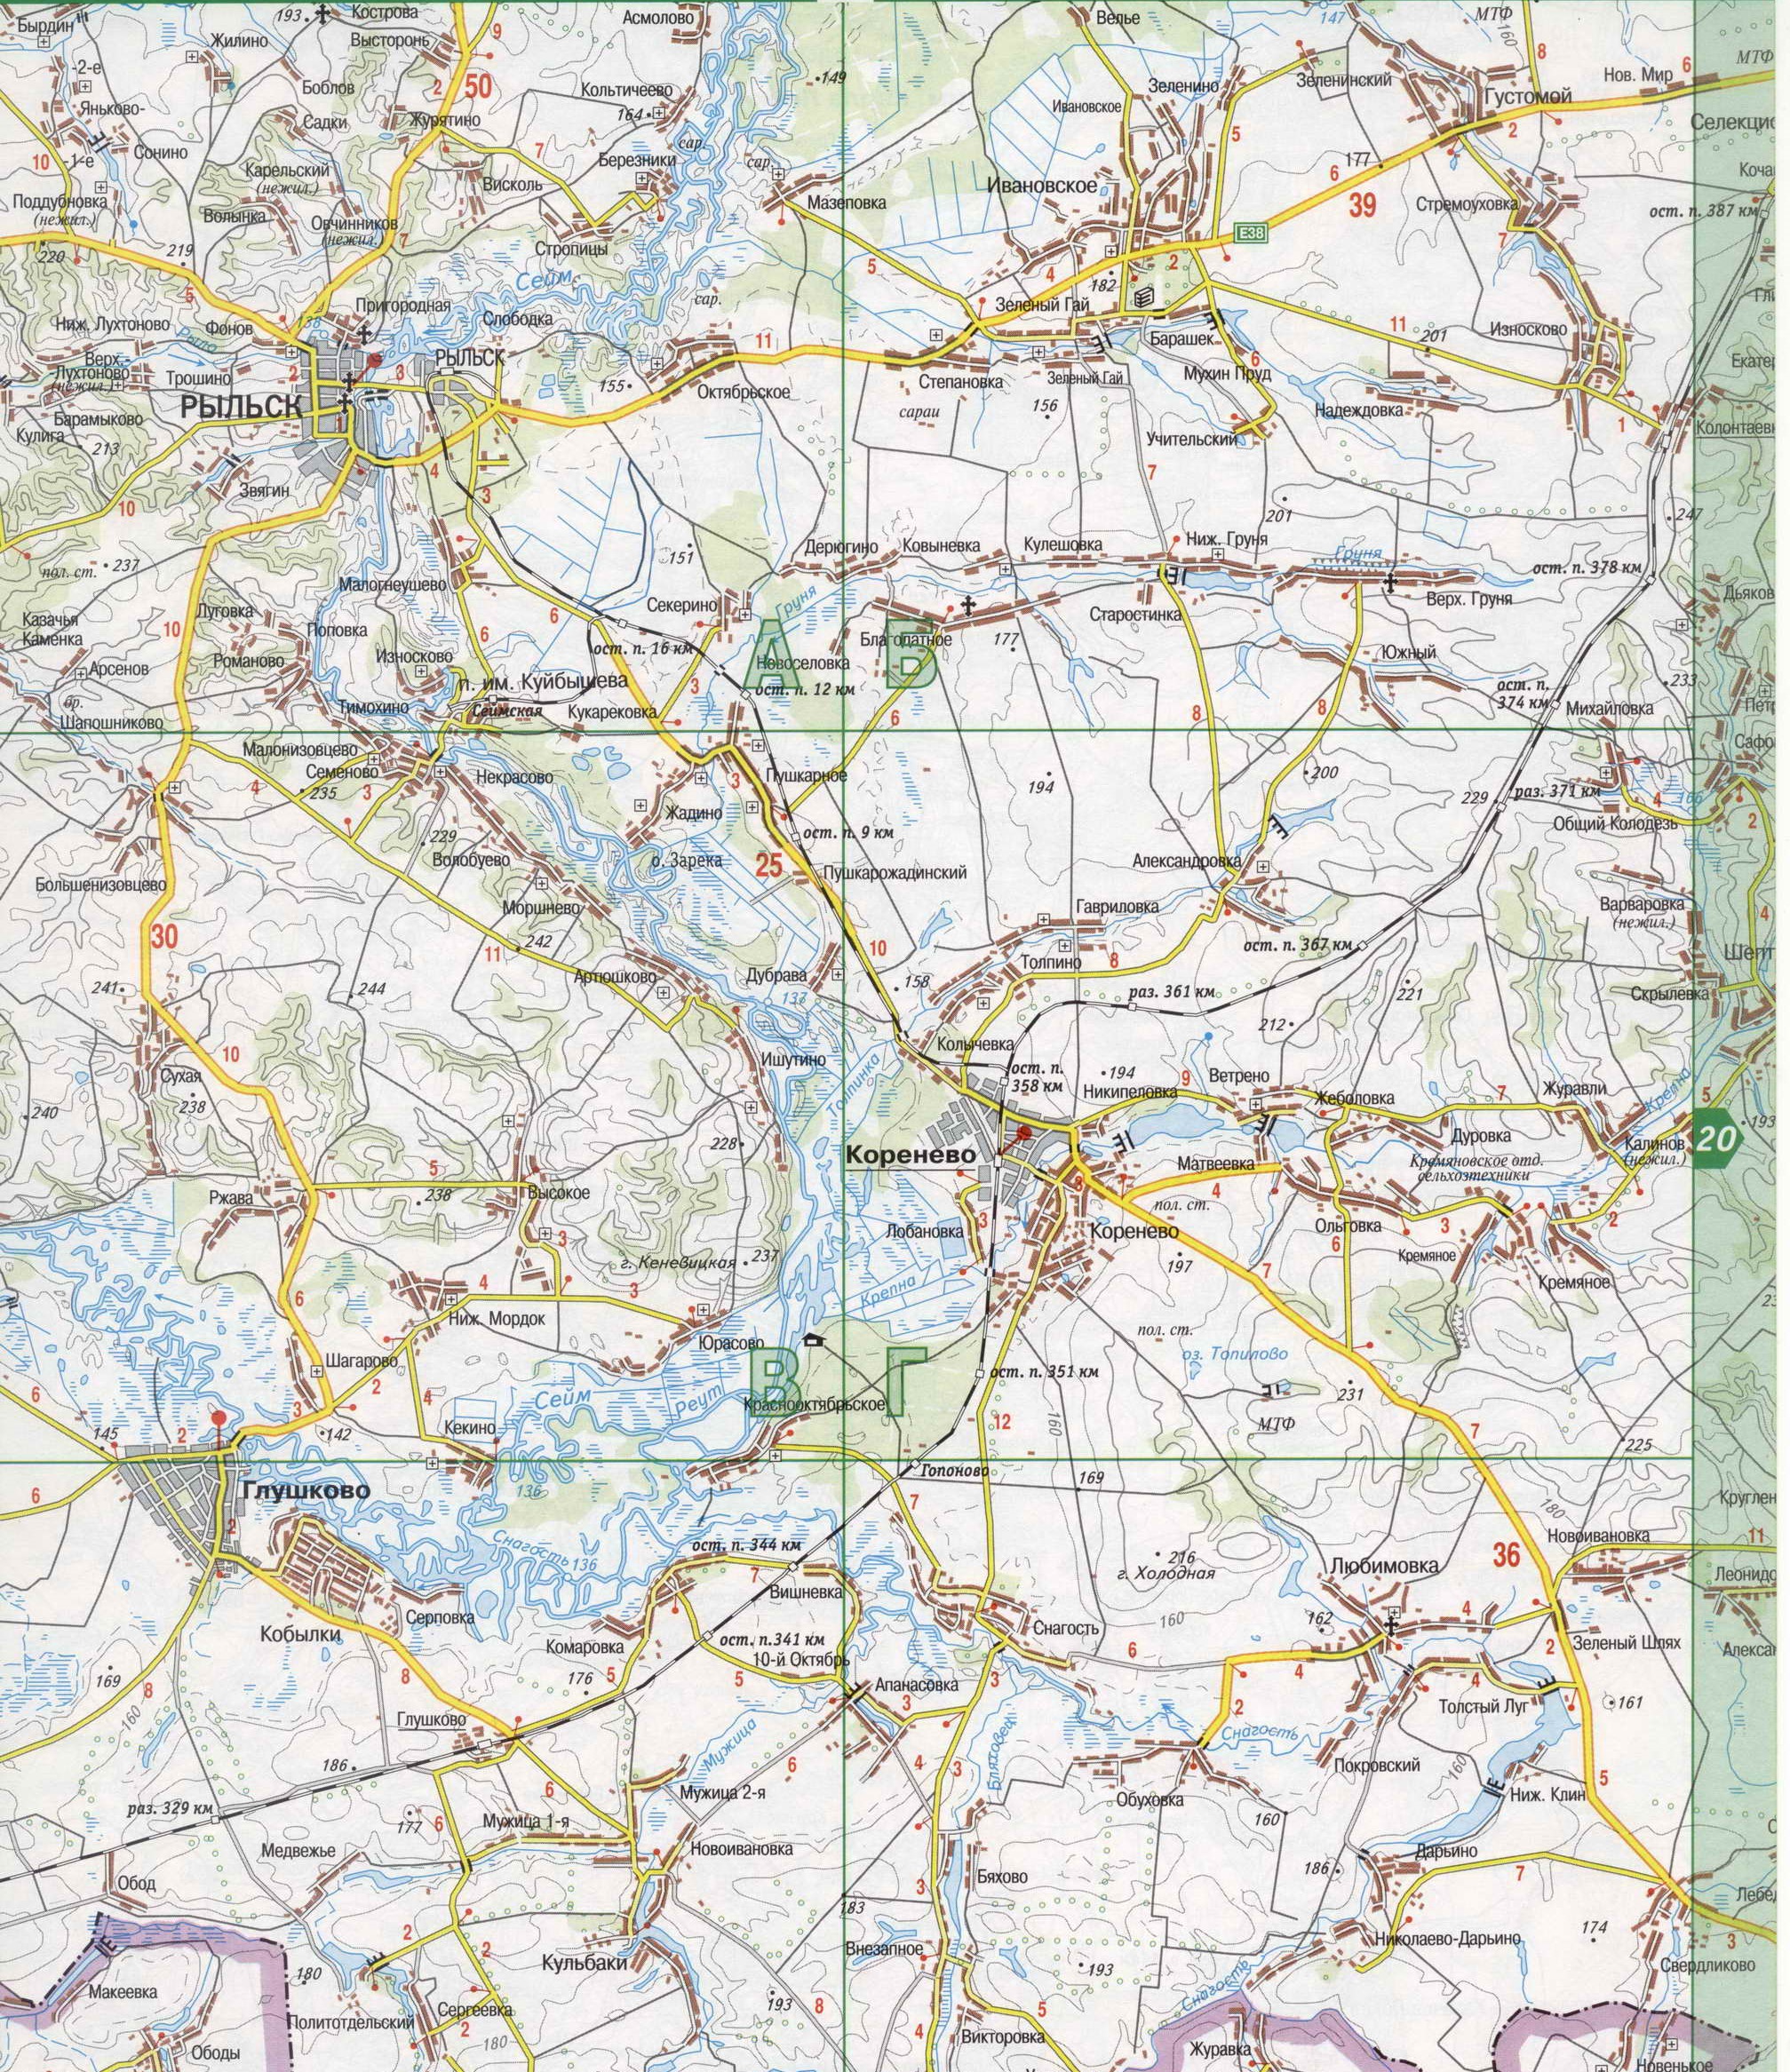 Карта Курской области (Россия) на русском языке, расположение на карте мирас городами, метро, центра, районов и округов